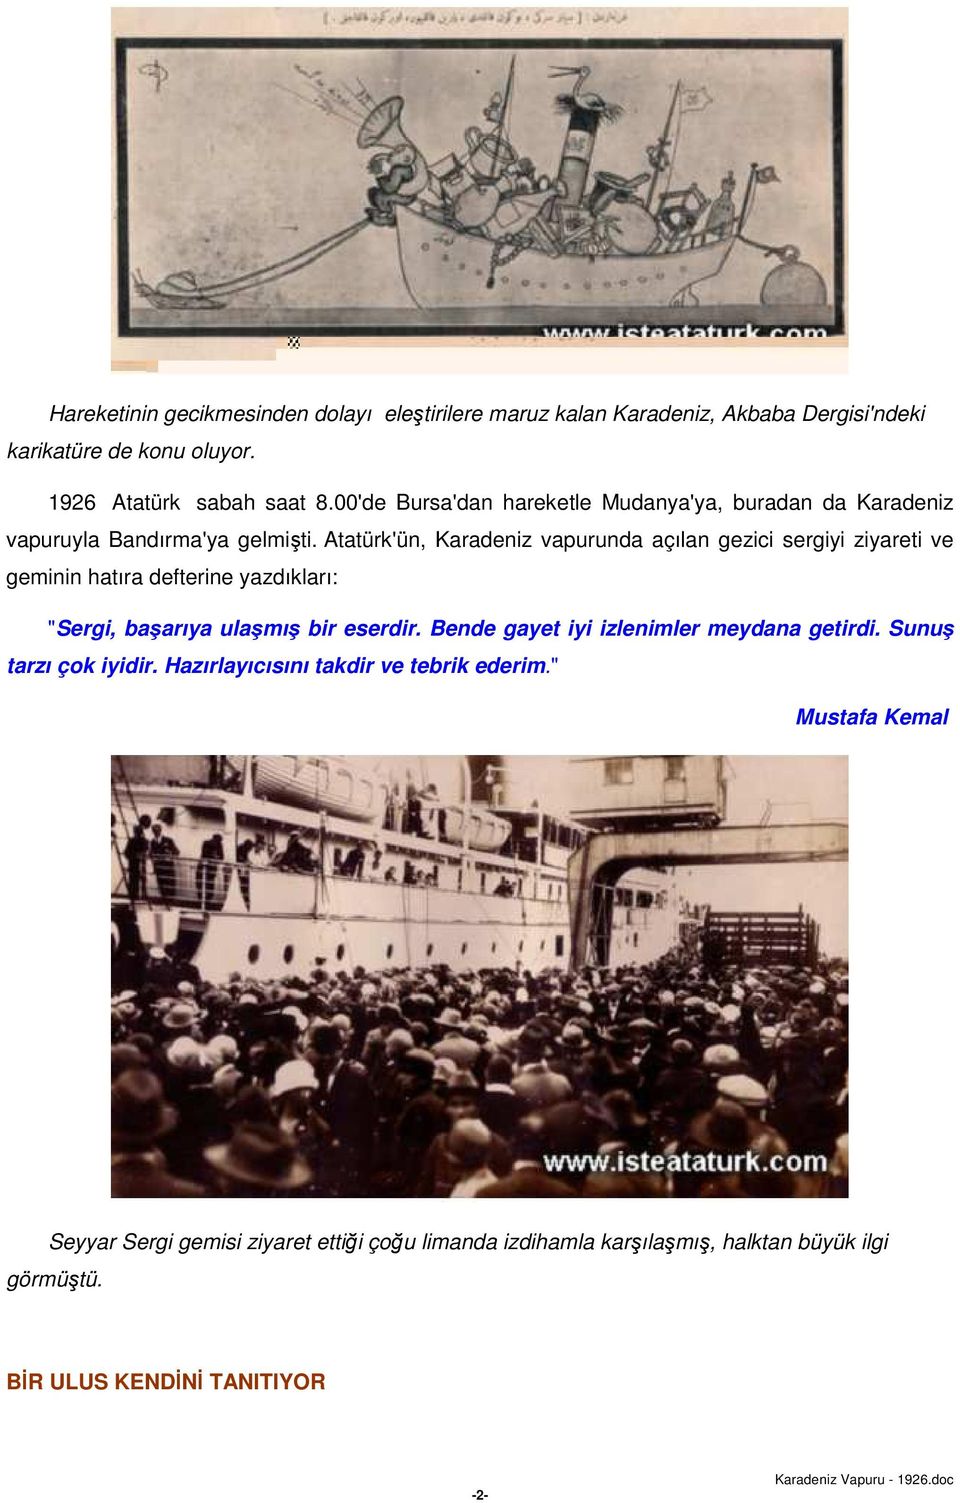 Atatürk'ün, Karadeniz vapurunda açılan gezici sergiyi ziyareti ve geminin hatıra defterine yazdıkları: "Sergi, başarıya ulaşmış bir eserdir.